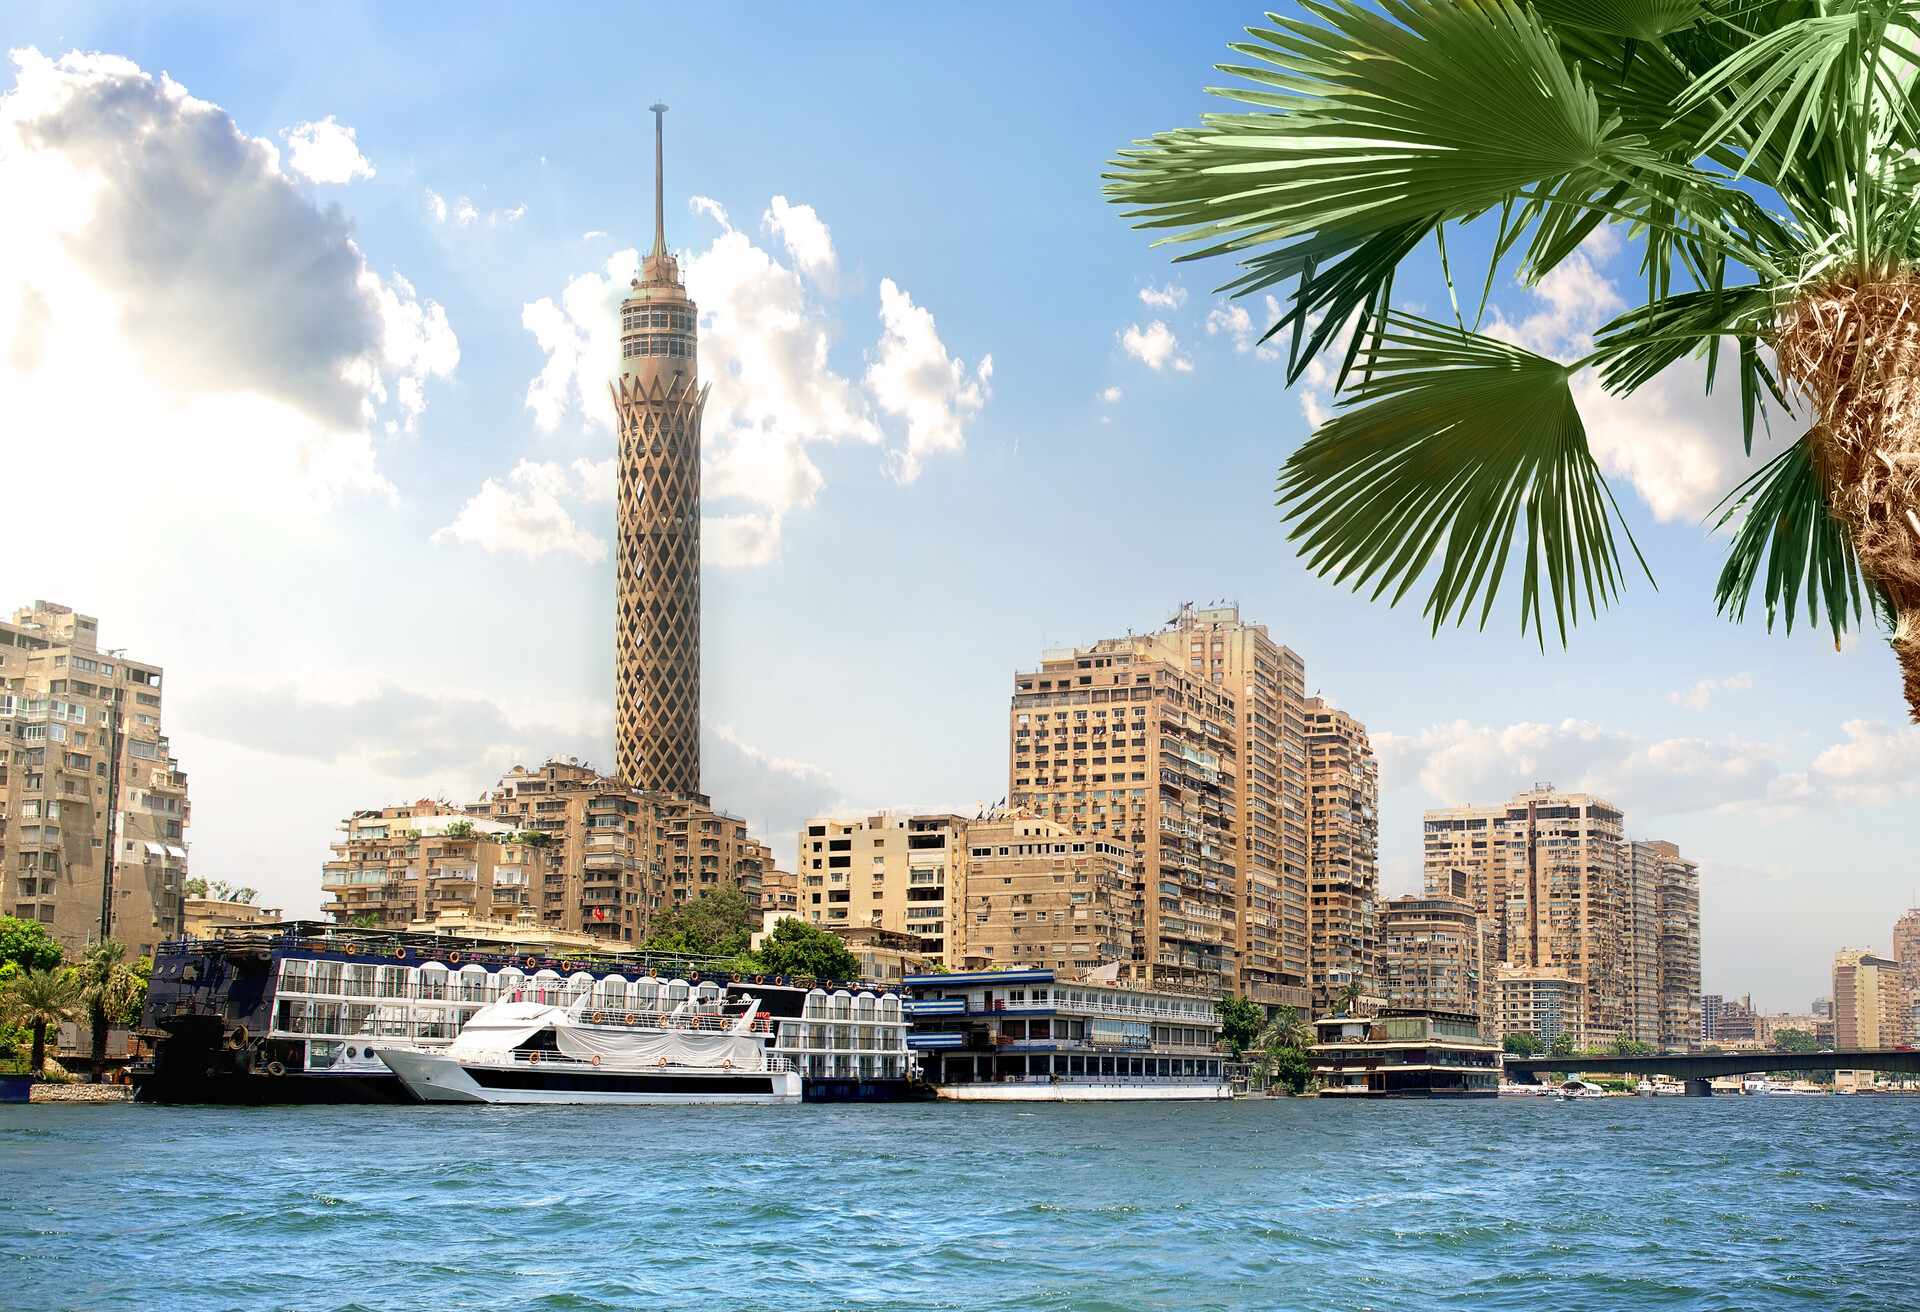 TV tower near Nile in Cairo at sunlight; Shutterstock ID 330574076; Purpose: Travel Returns; Brand (KAYAK, Momondo, Any): KAYAK